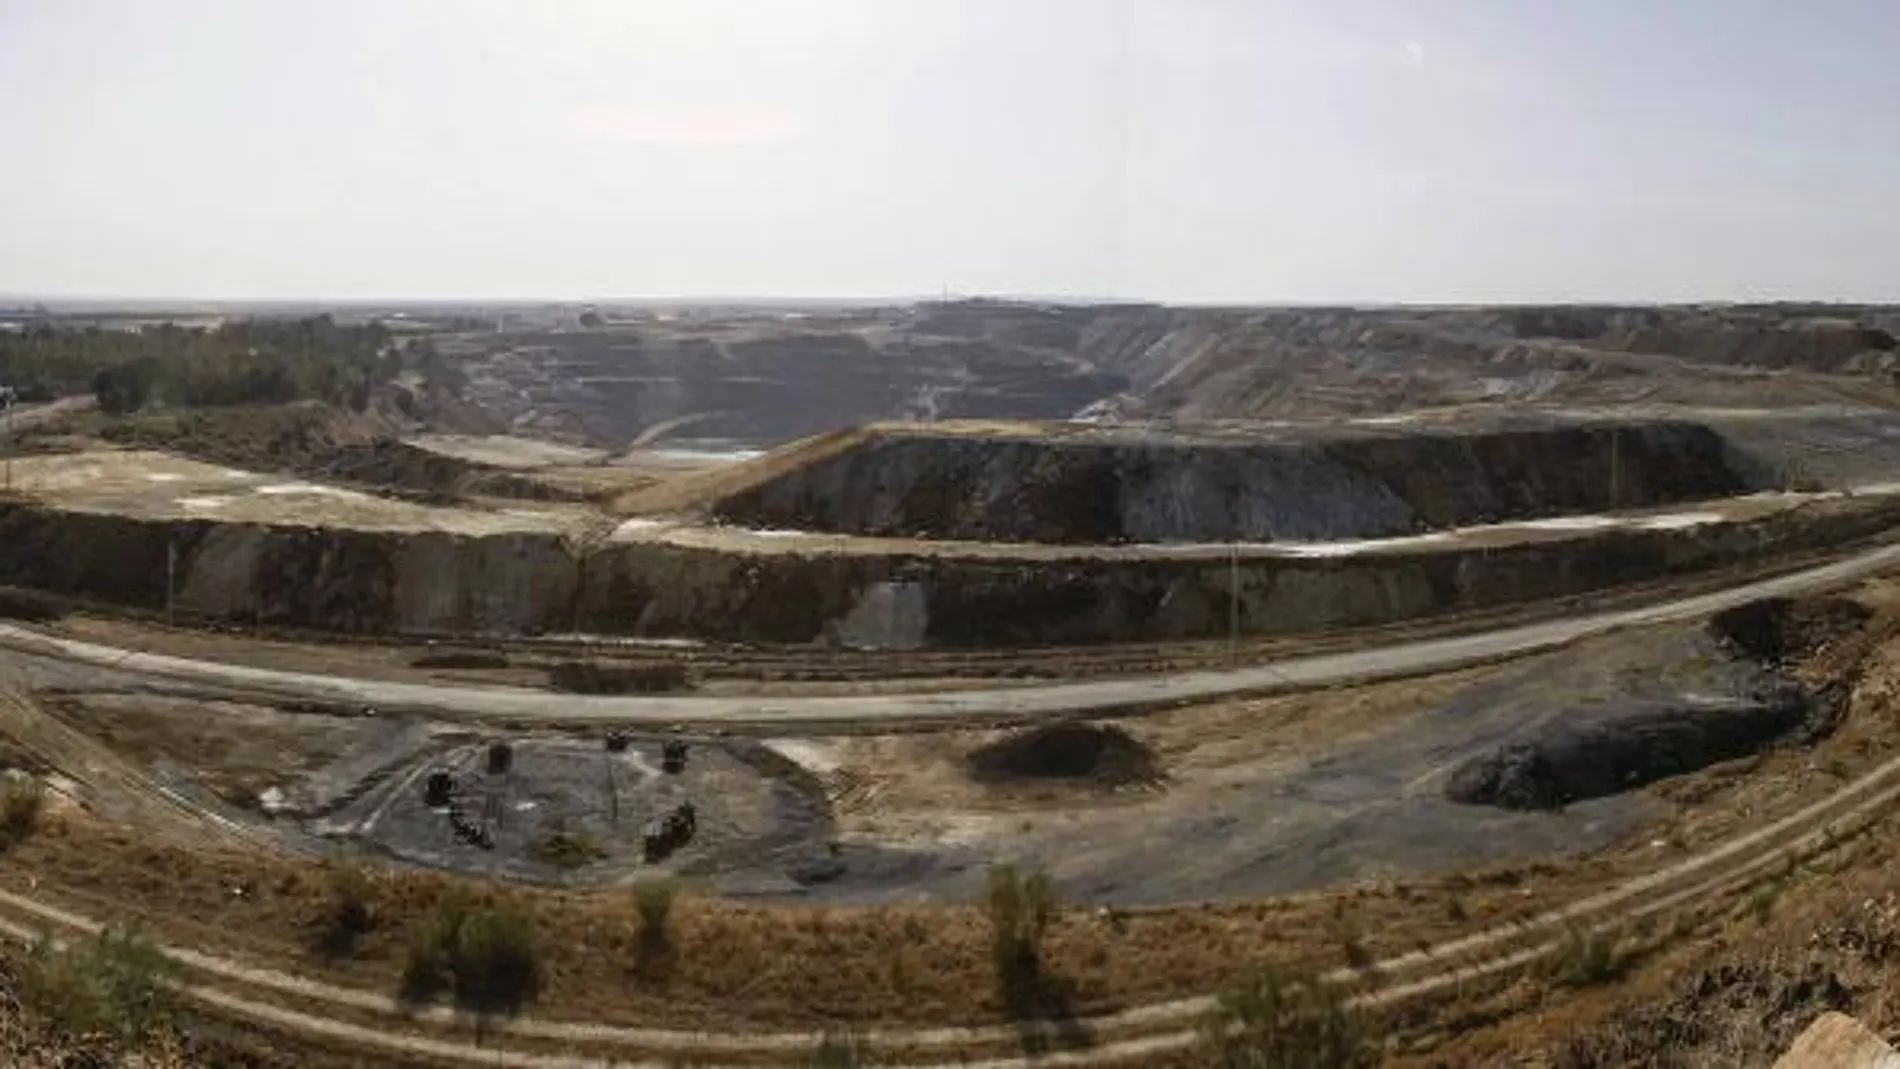 La concesión de la mina de Aznalcóllar, en Sevilla, es objeto de controversia judicial